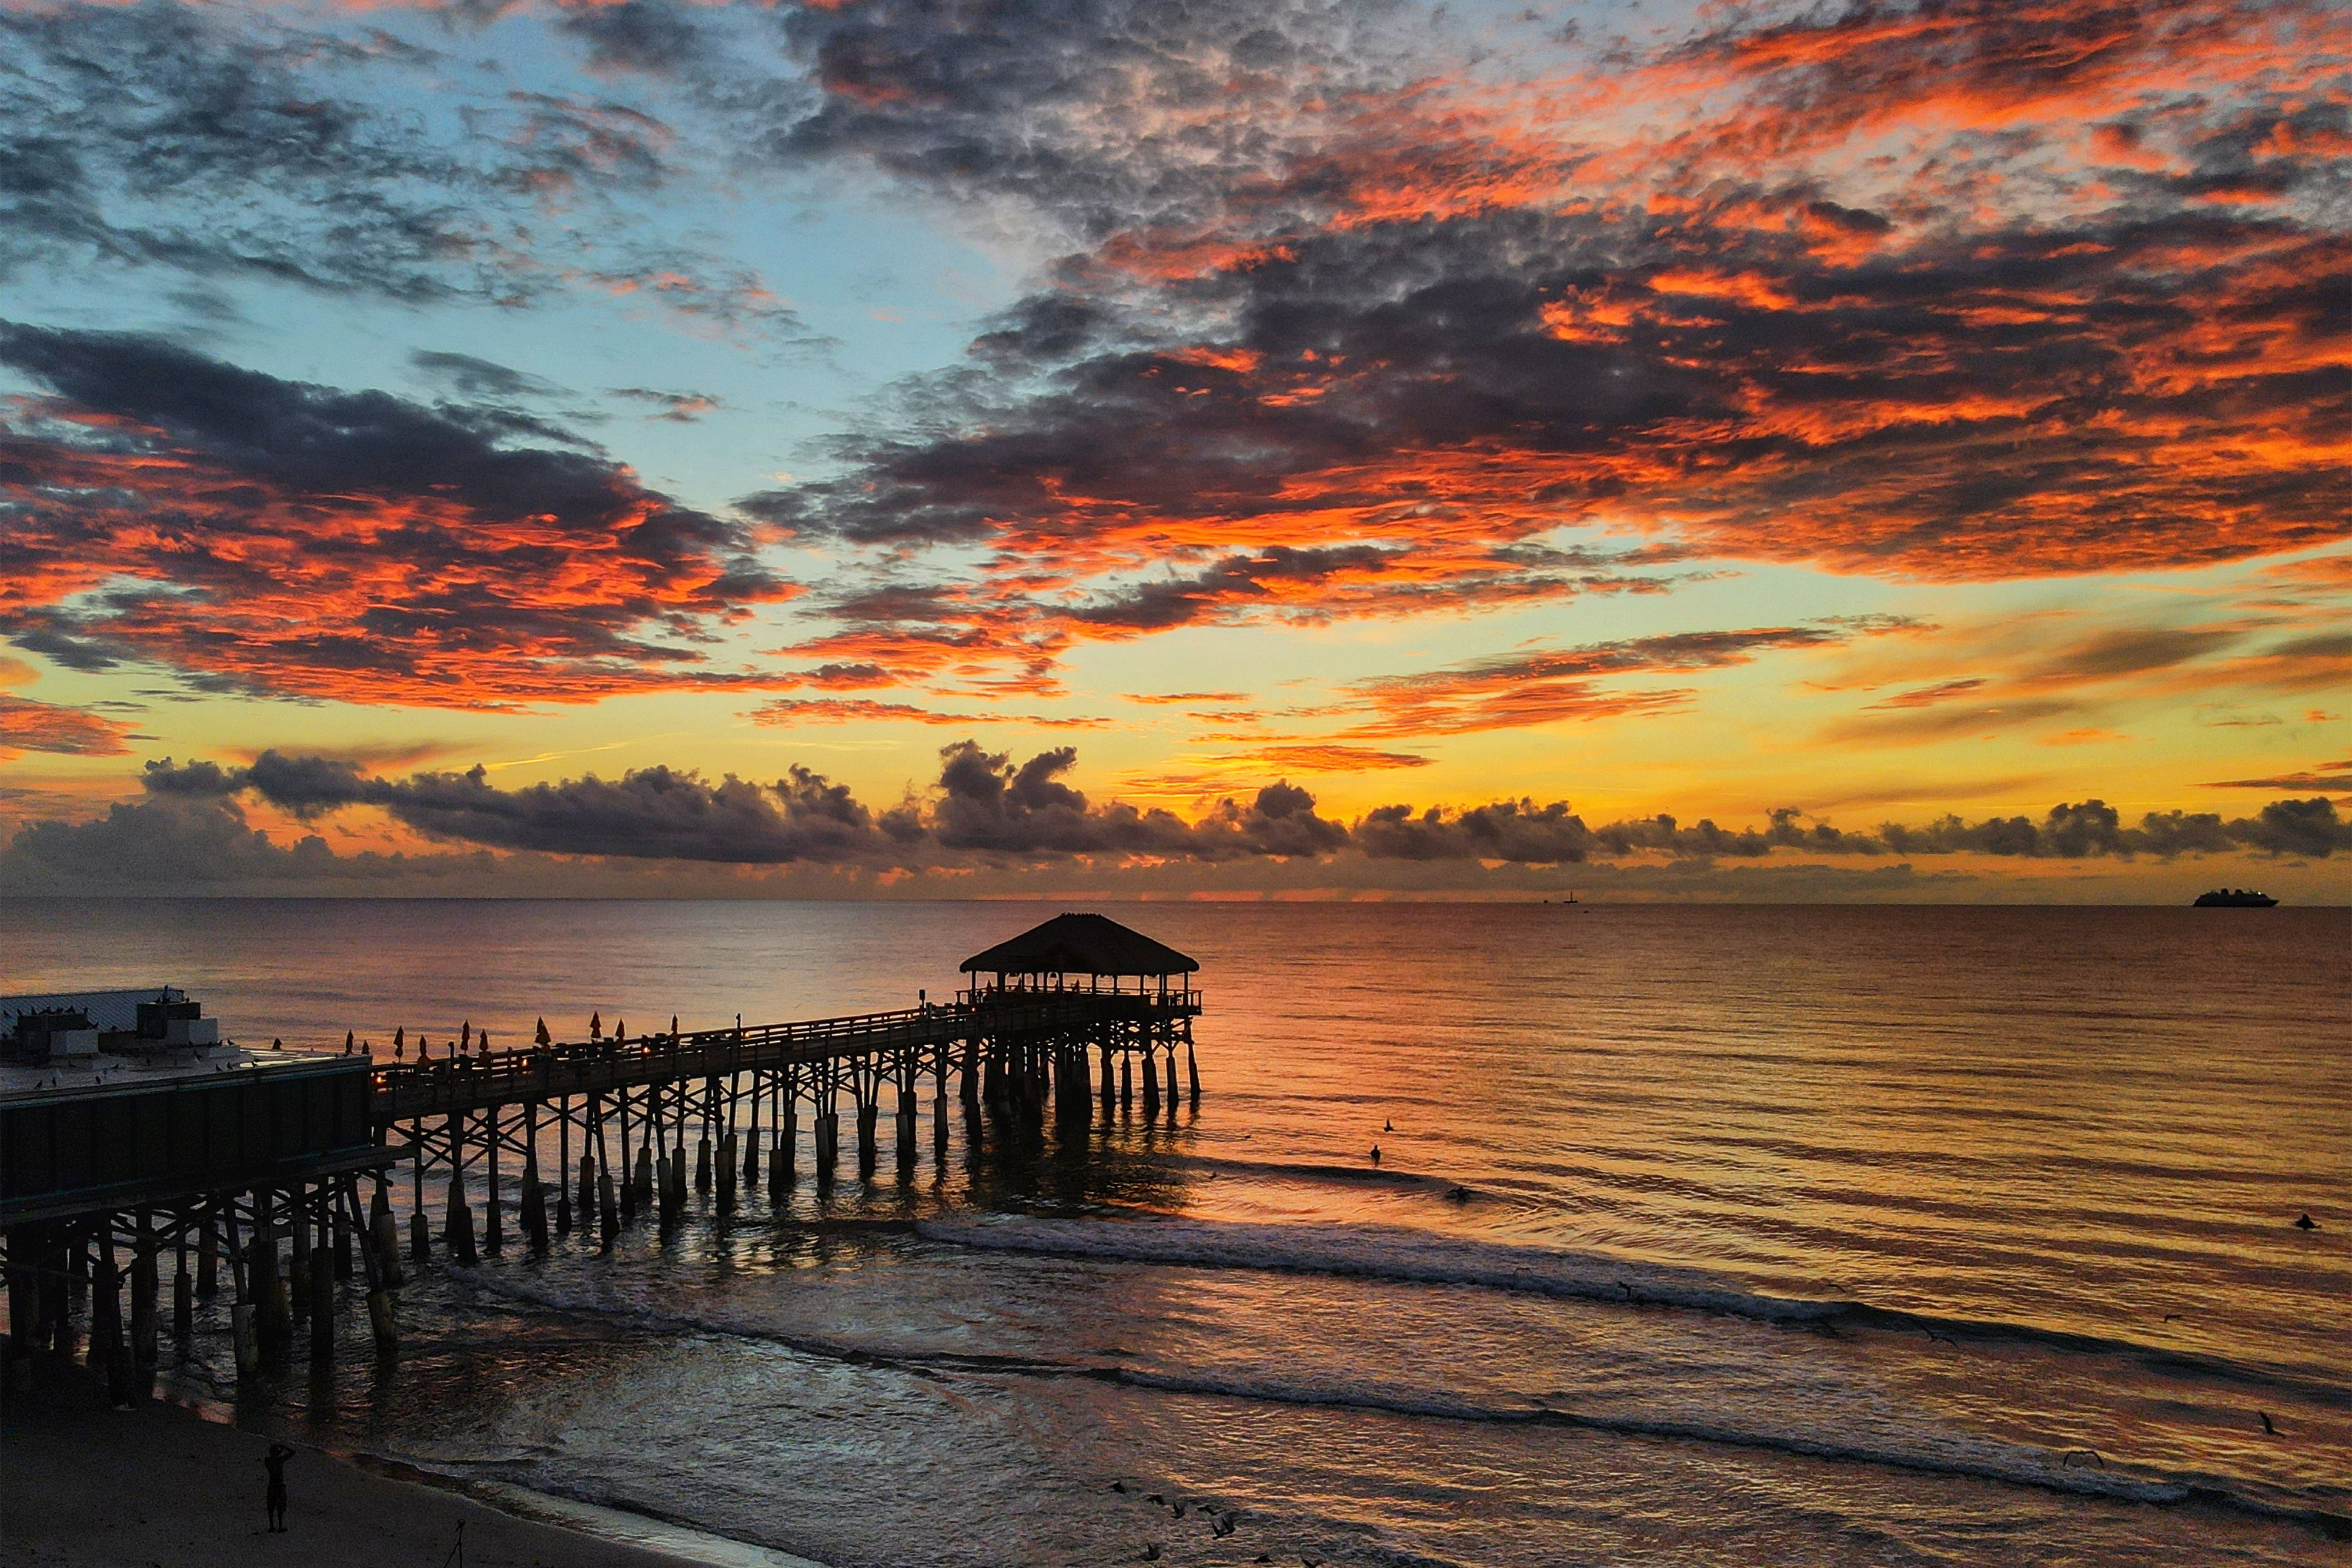 Atlantic Ocean Amazing Sunrise Image - Westgate Cocoa Beach Pier